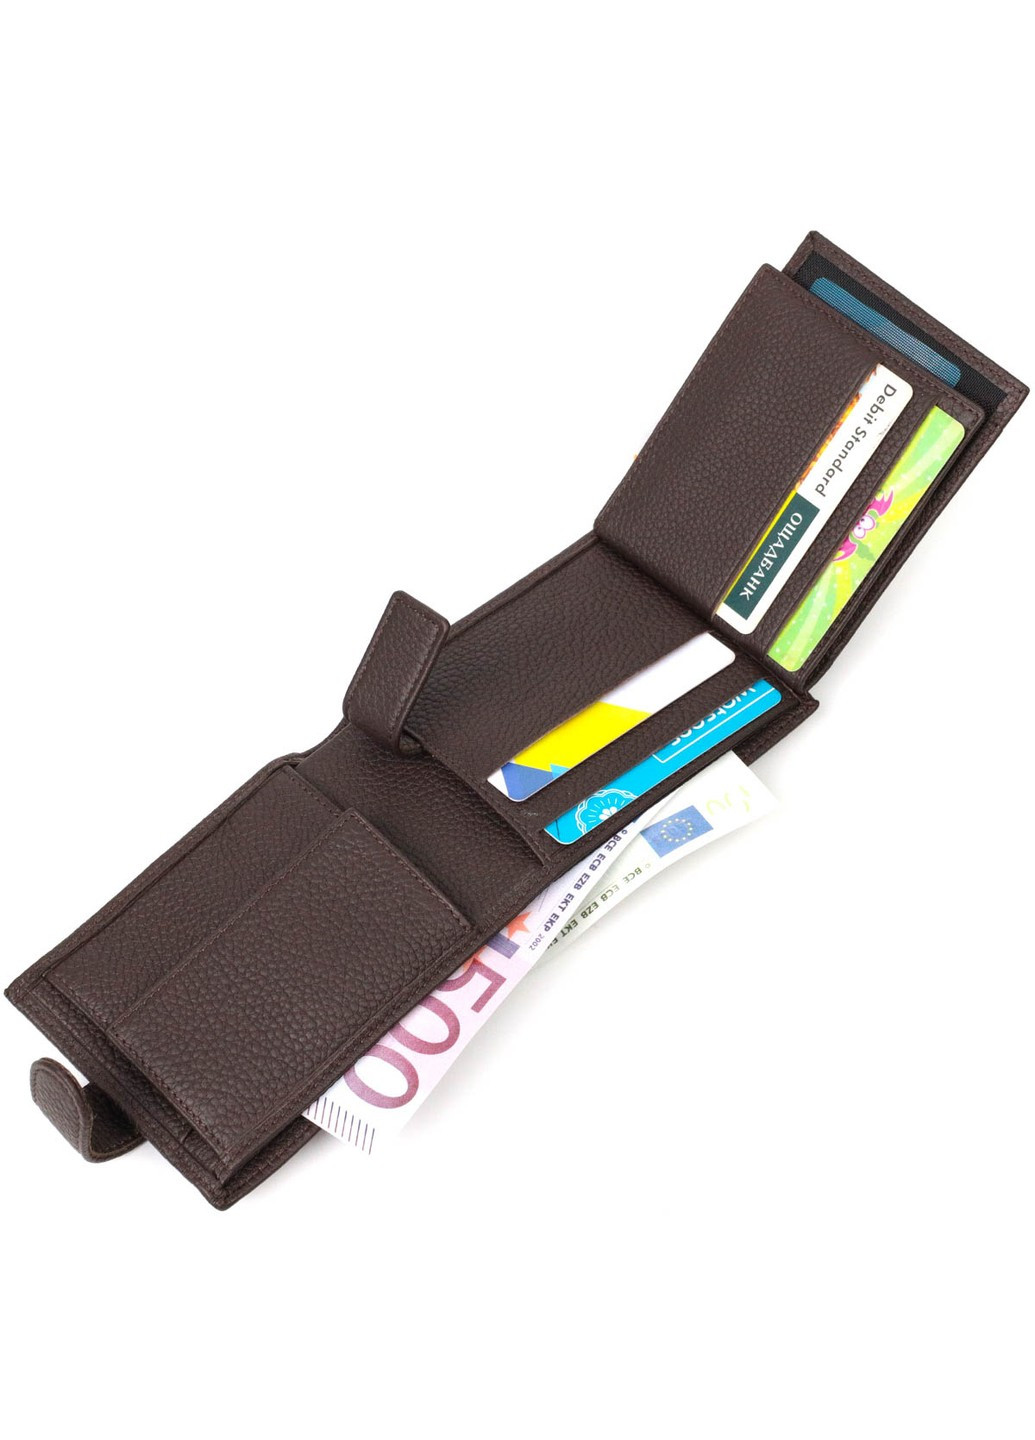 Горизонтальний чоловічий гаманець із натуральної шкіри флотар 22007 Коричневий Bond (262158708)